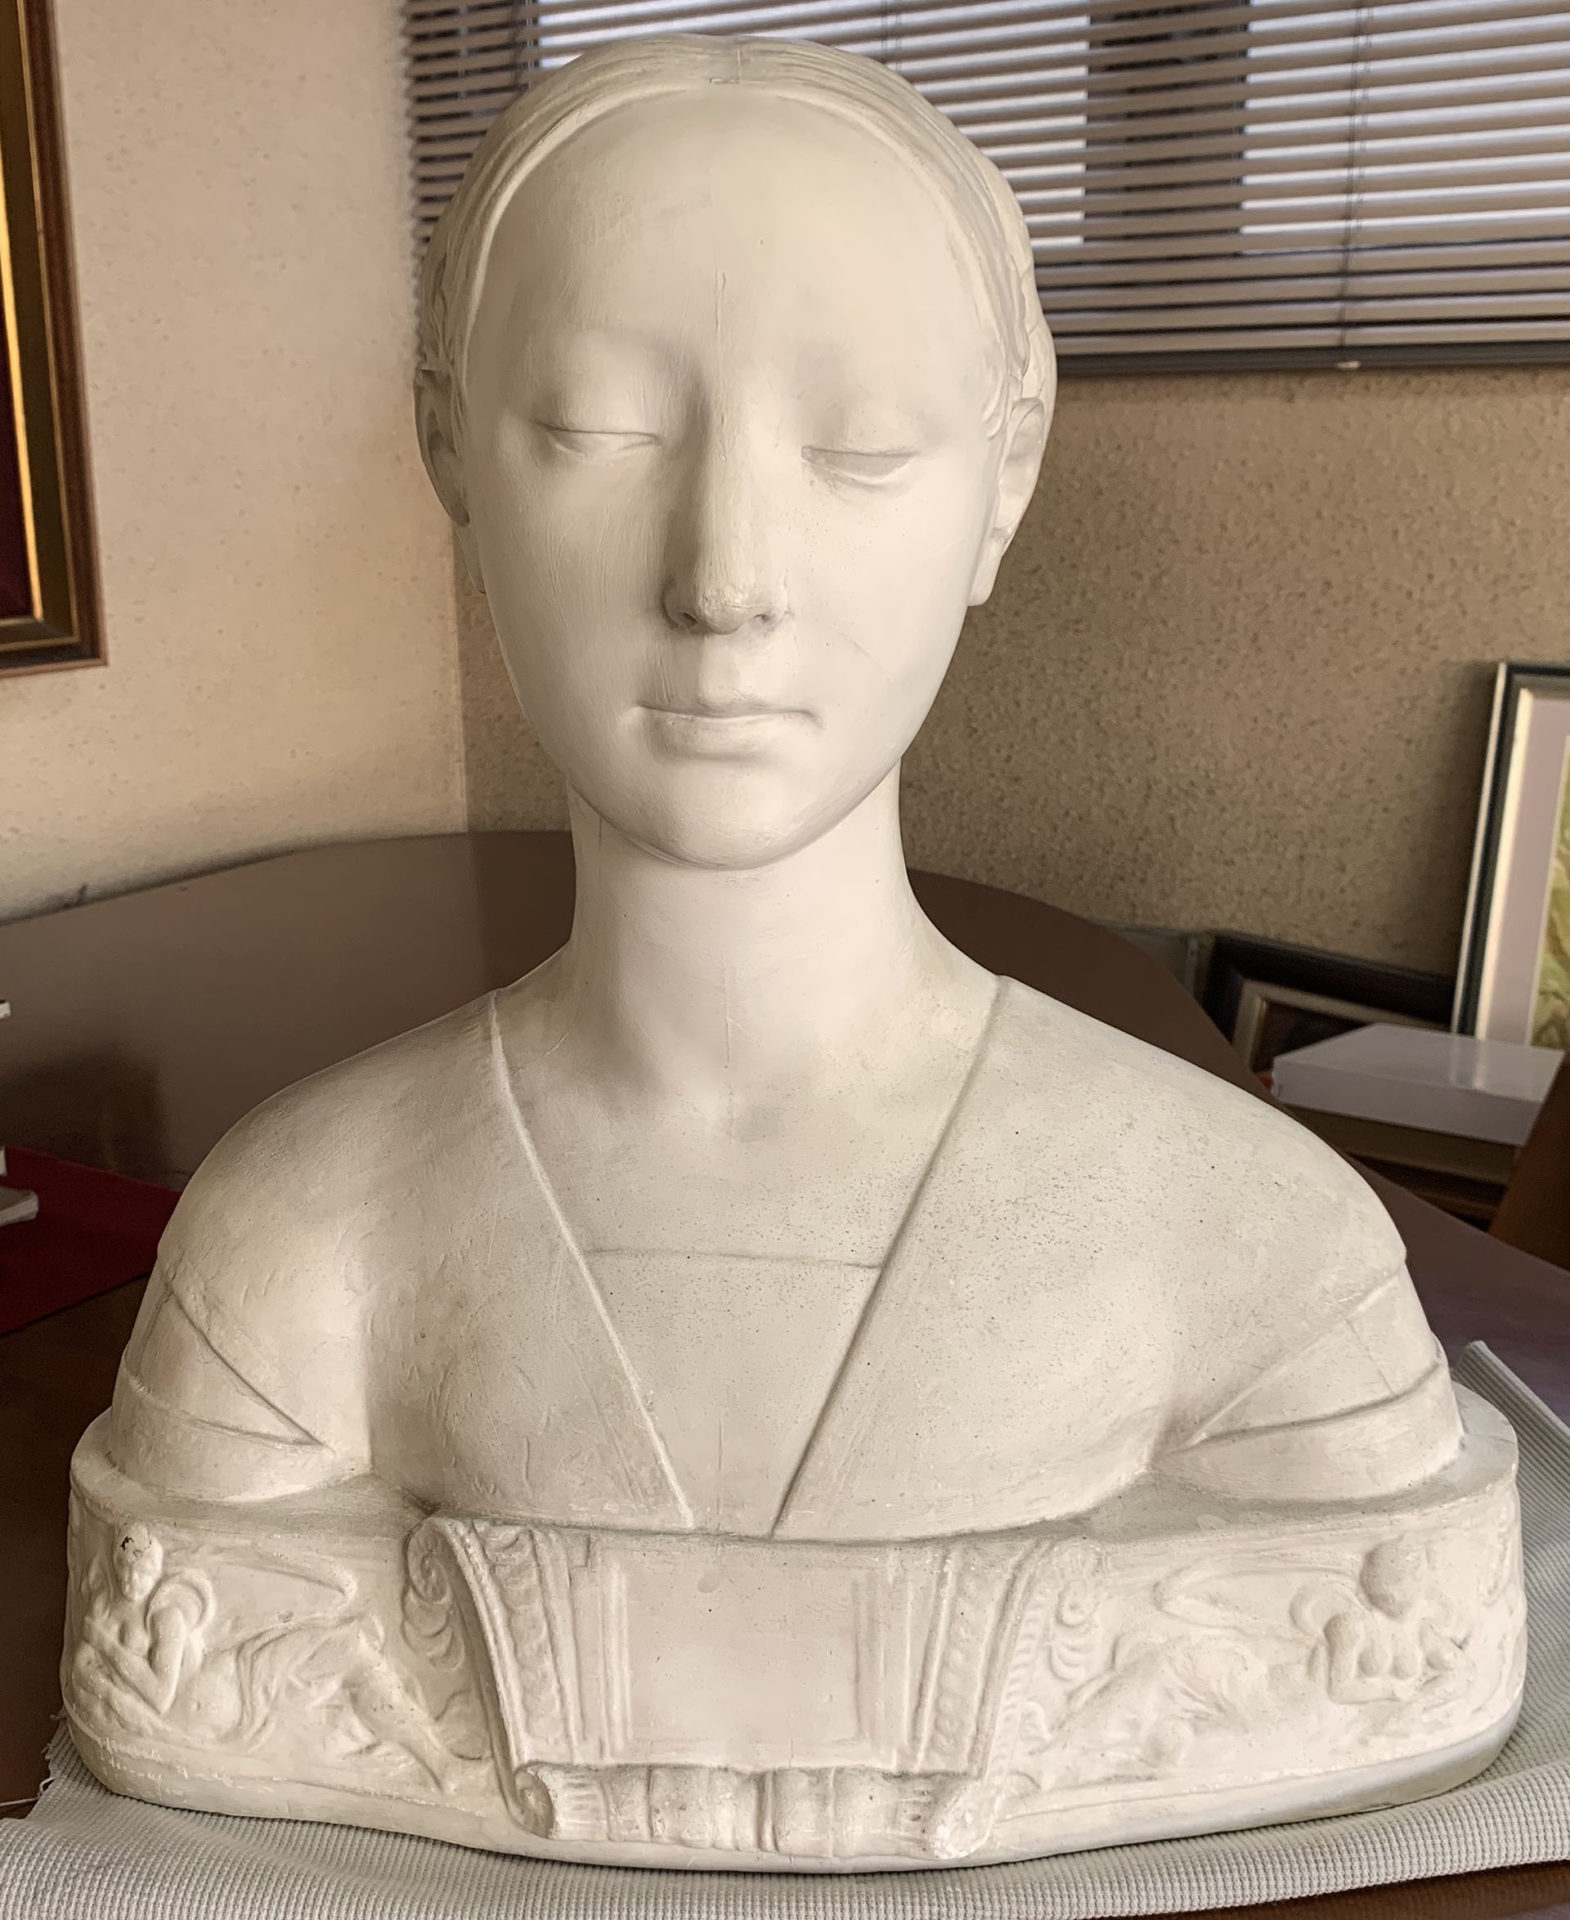 石膏像「マリア・スフォルツァ胸像」 - 彫刻/オブジェクト